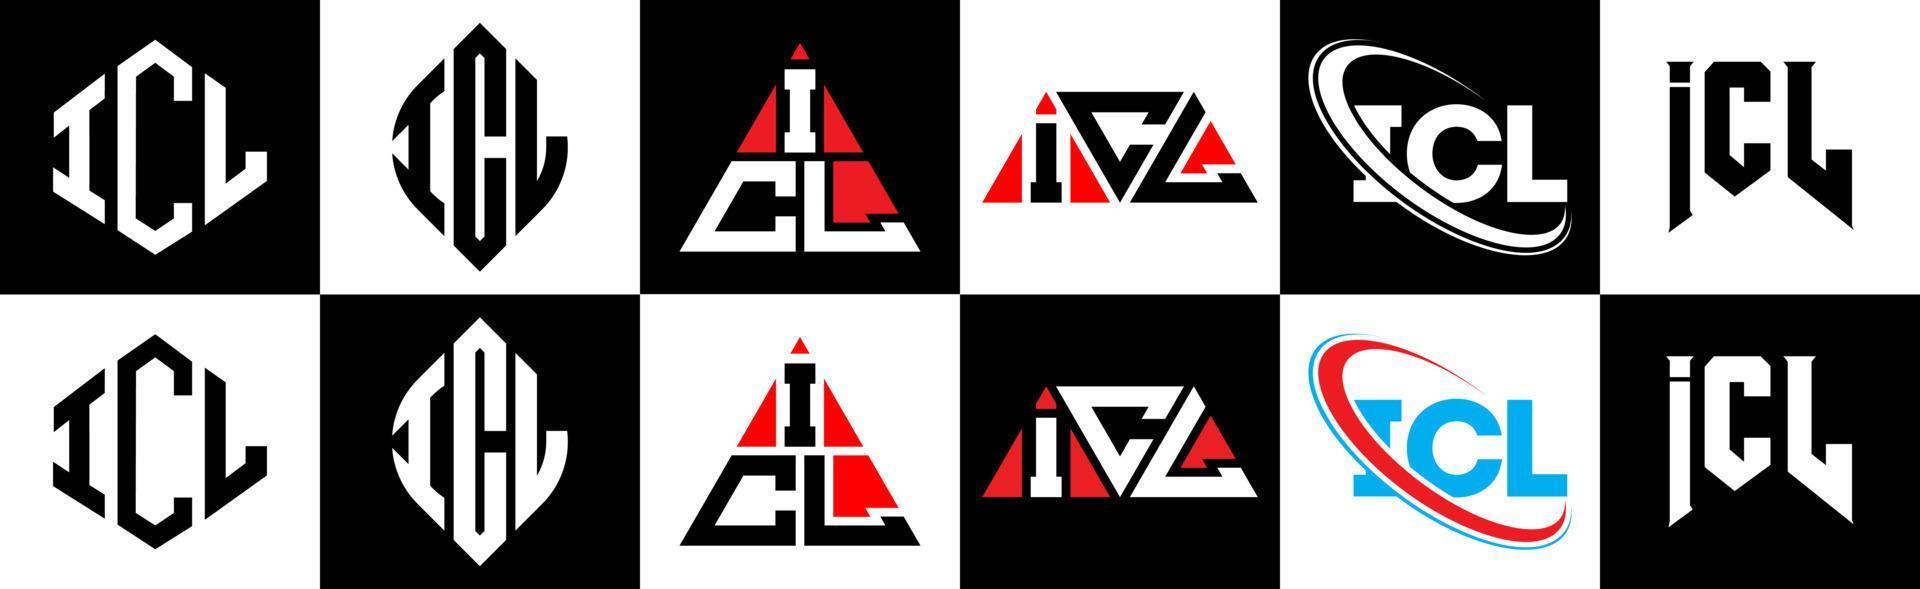 création de logo de lettre icl en six styles. icl polygone, cercle, triangle, hexagone, style plat et simple avec logo de lettre de variation de couleur noir et blanc dans un plan de travail. icl logo minimaliste et classique vecteur